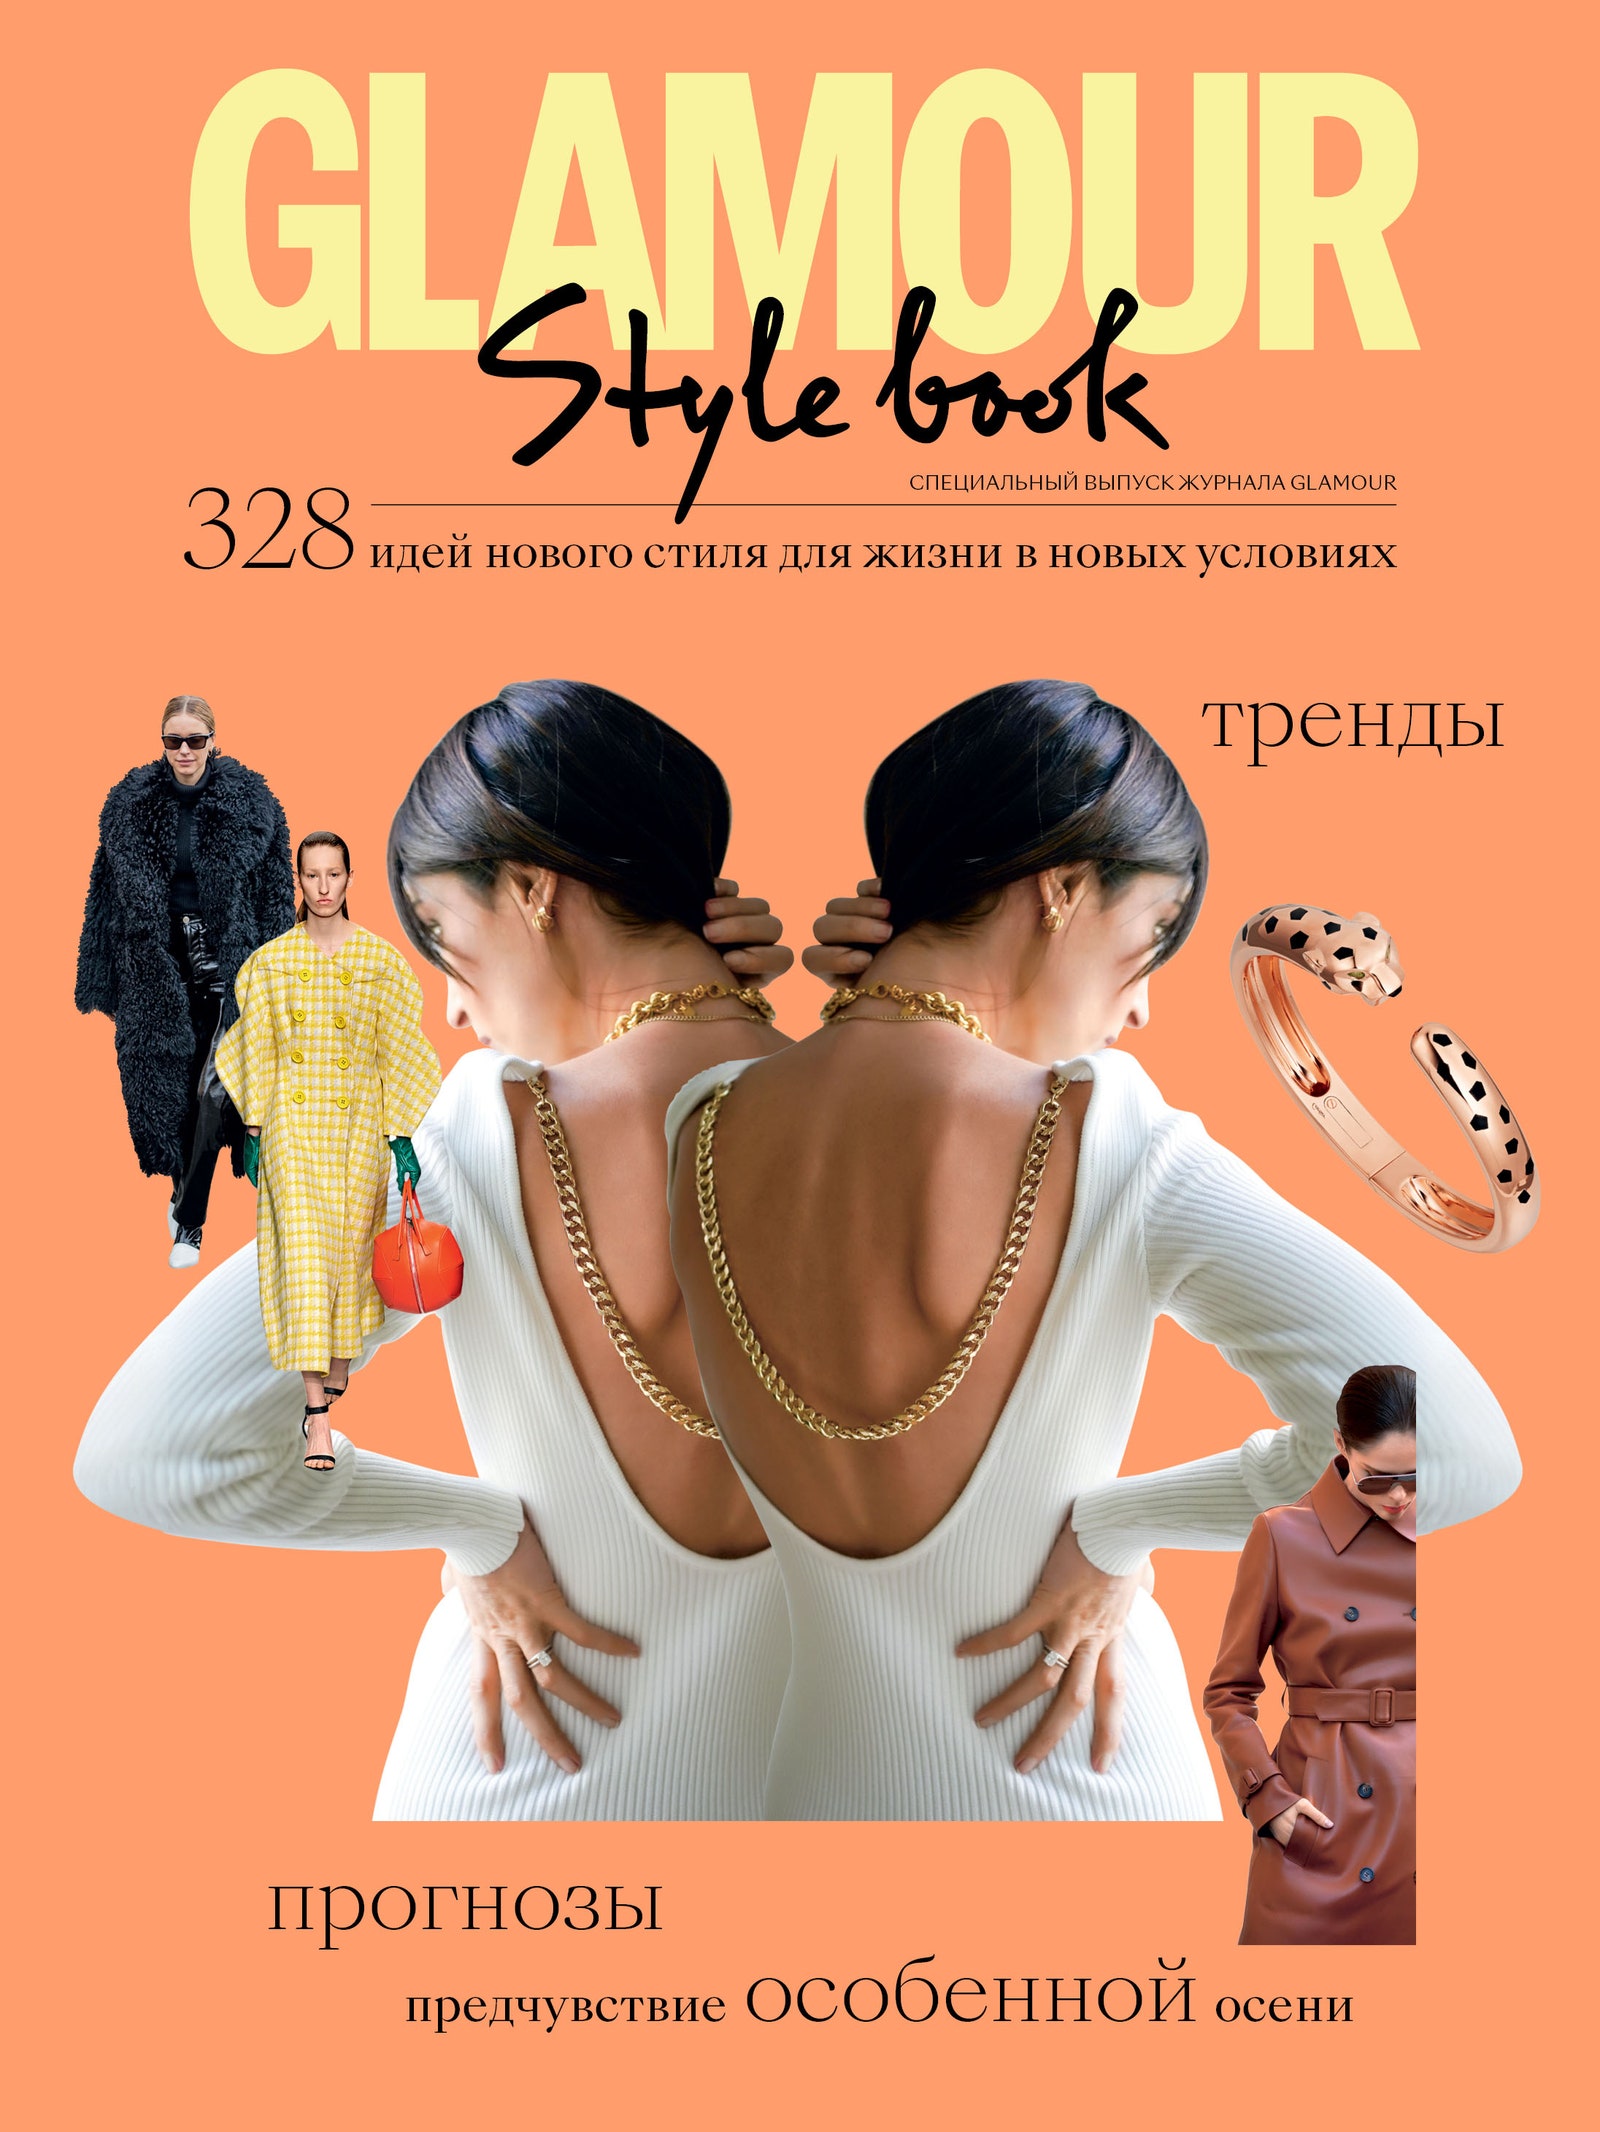 Новый Style Book Glamour уже в продаже